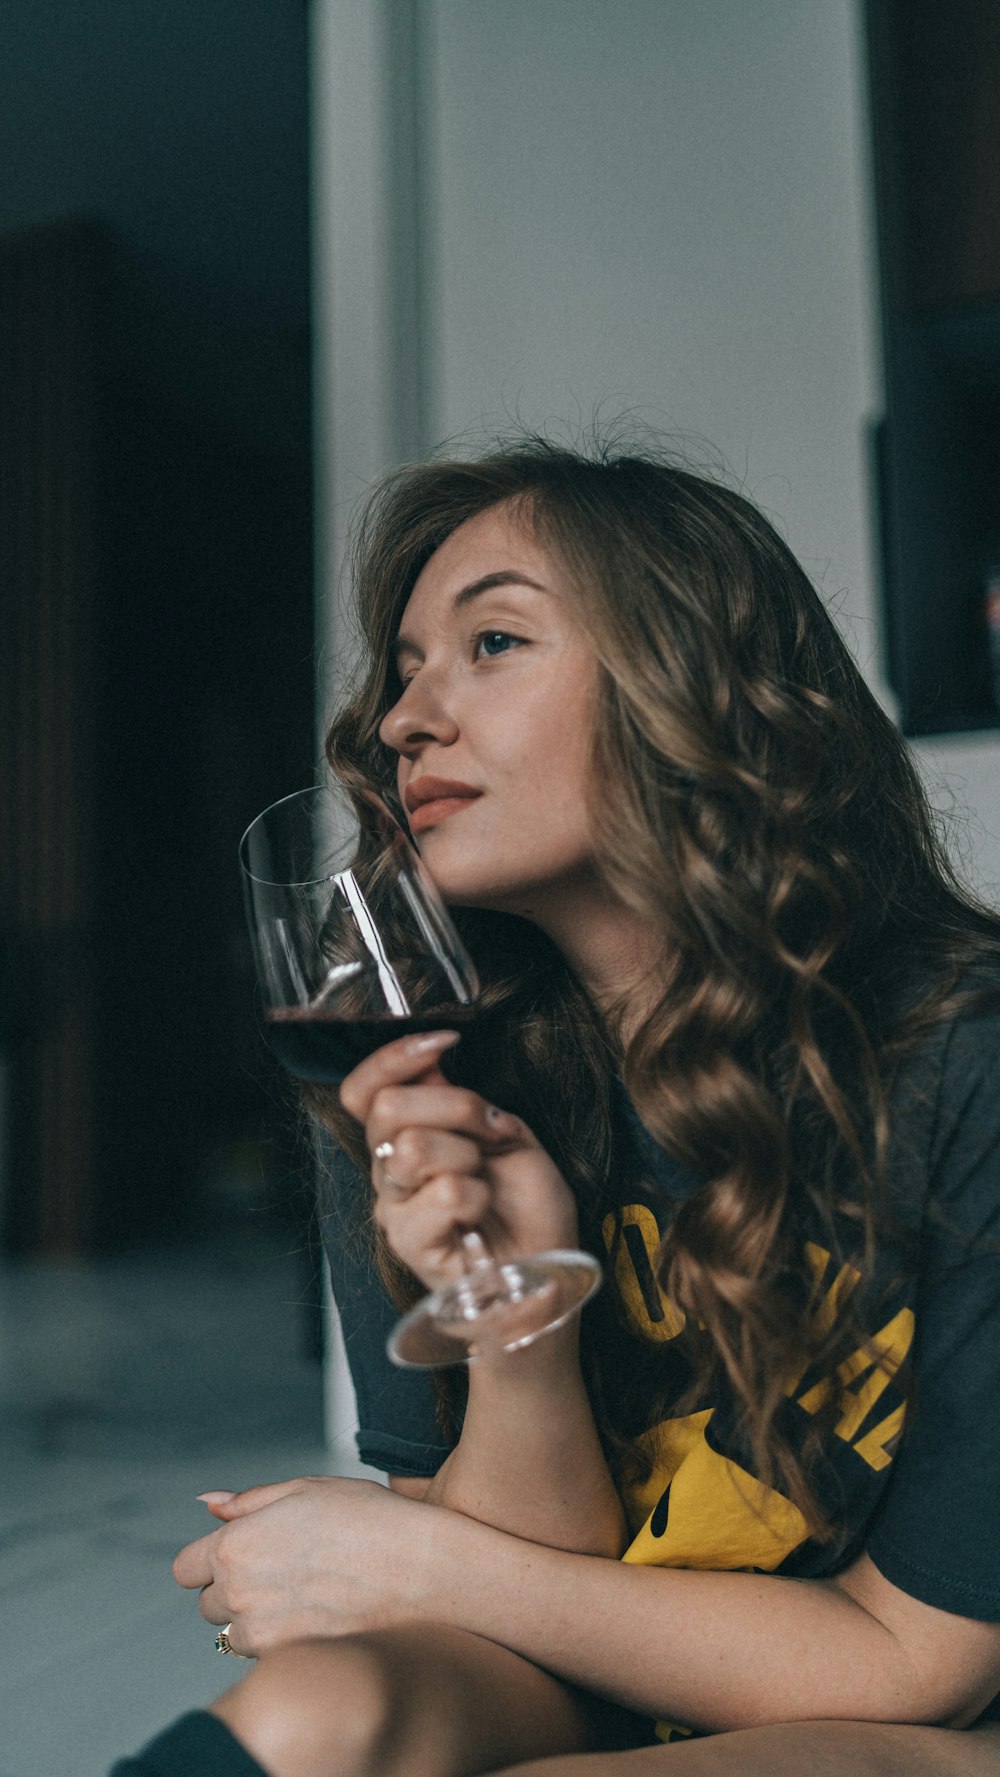 와인 한 잔을 들고 바닥에 앉아 있는 여자